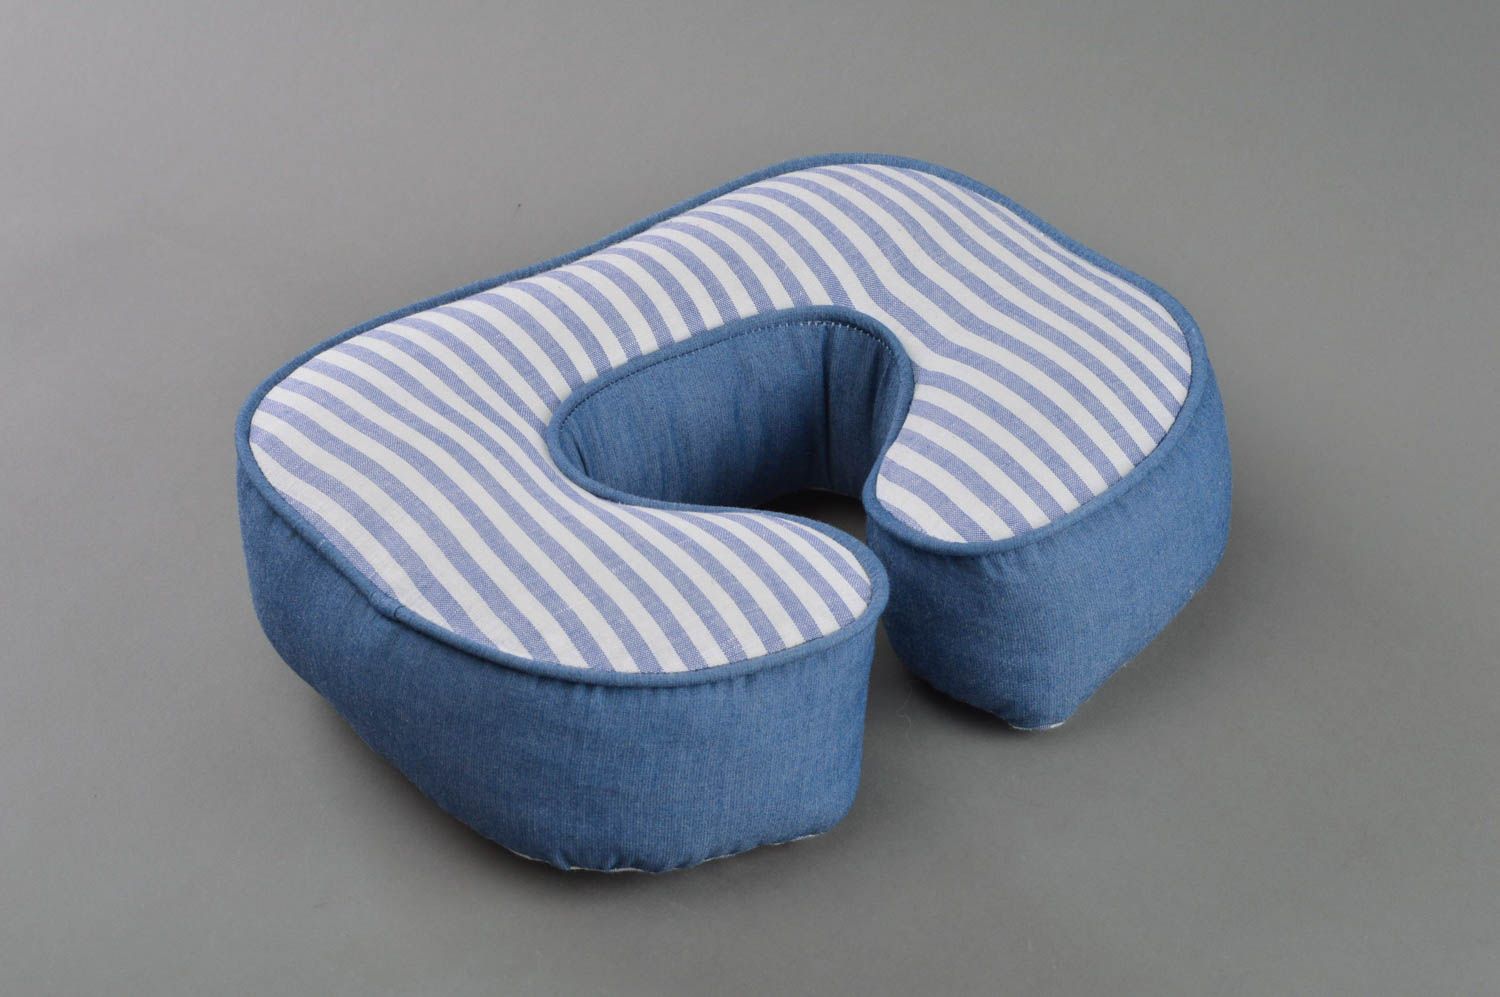 Декоративная буква-подушка С в полоску из синей натуральной ткани ручной работы фото 2